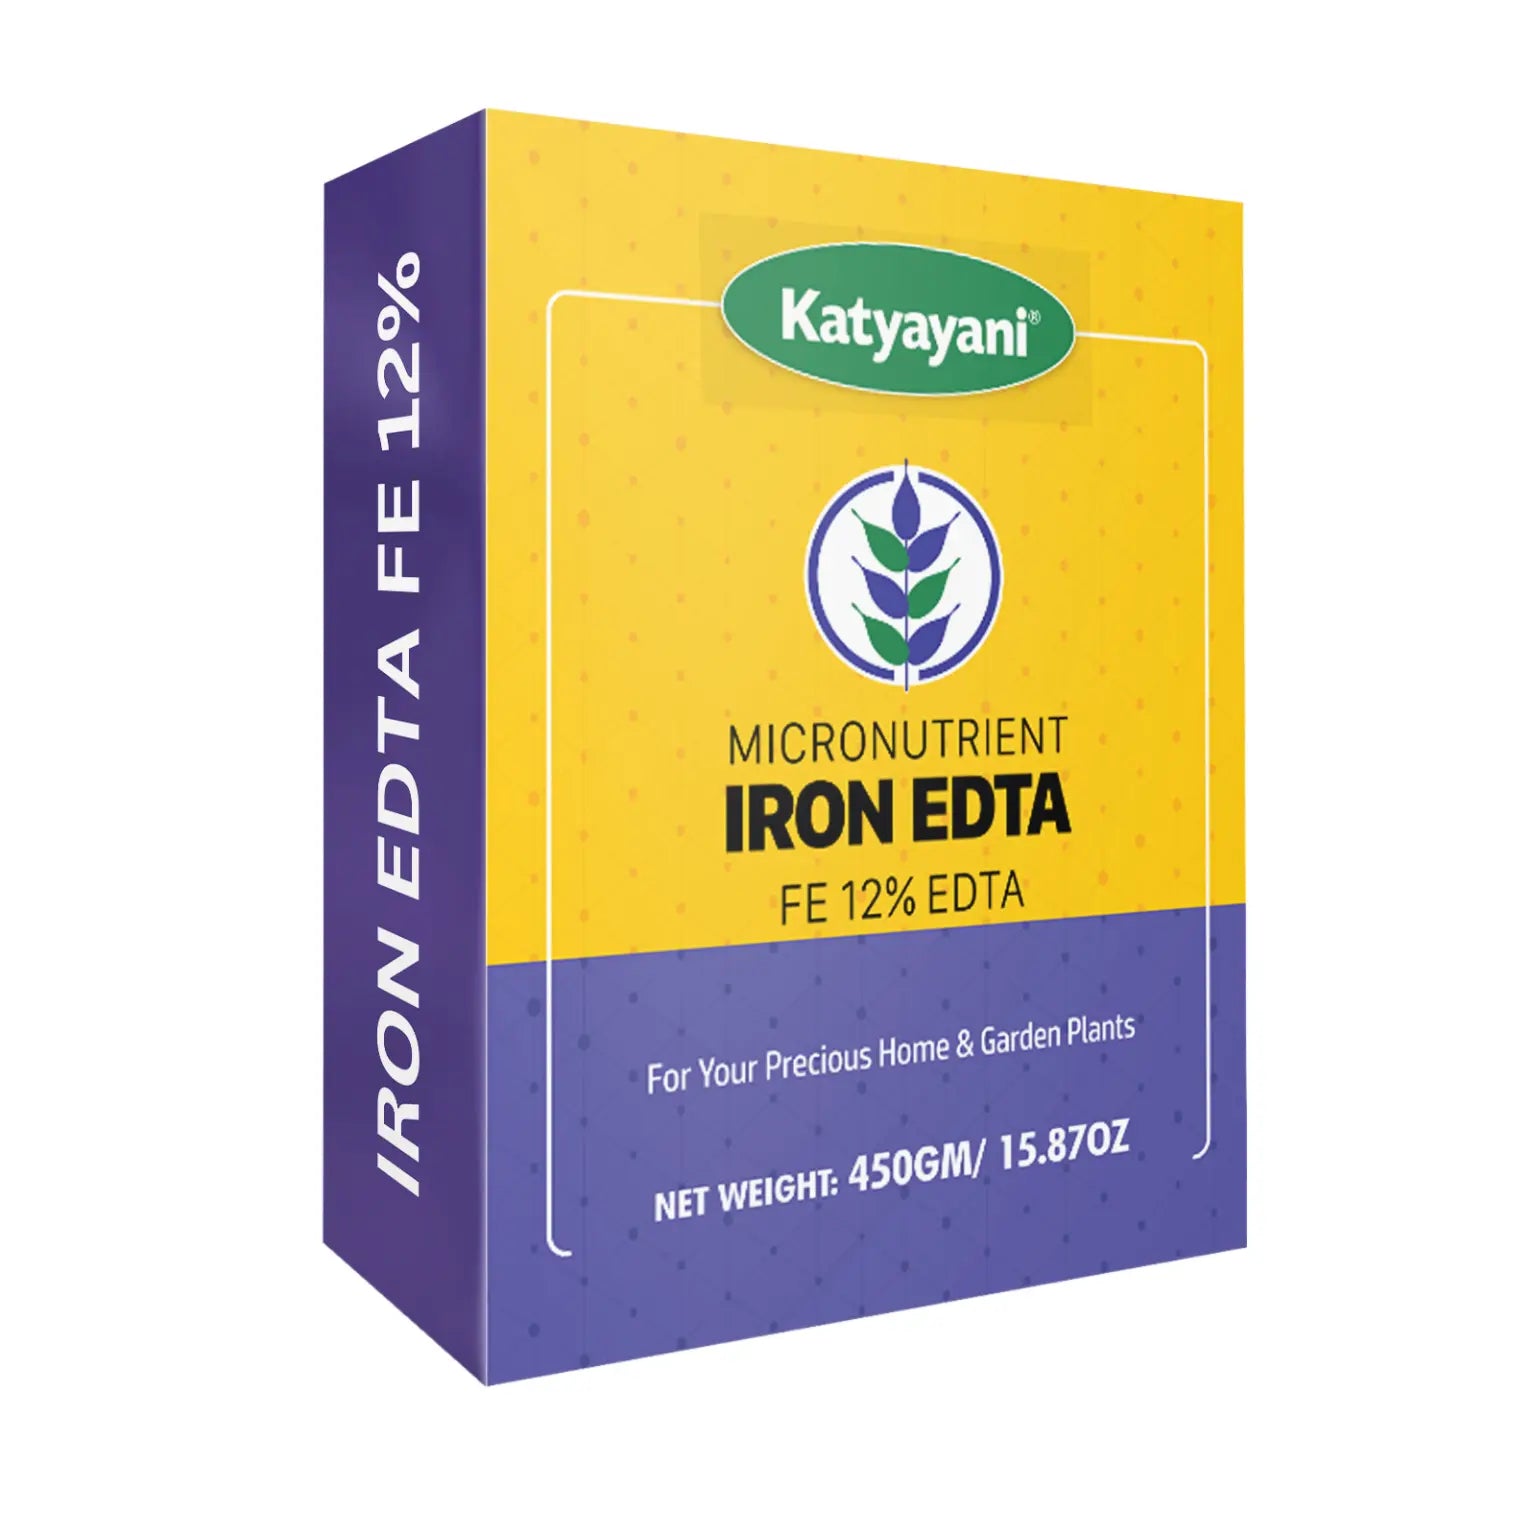 Katyayani Iron EDTA | Fe 12% EDTA